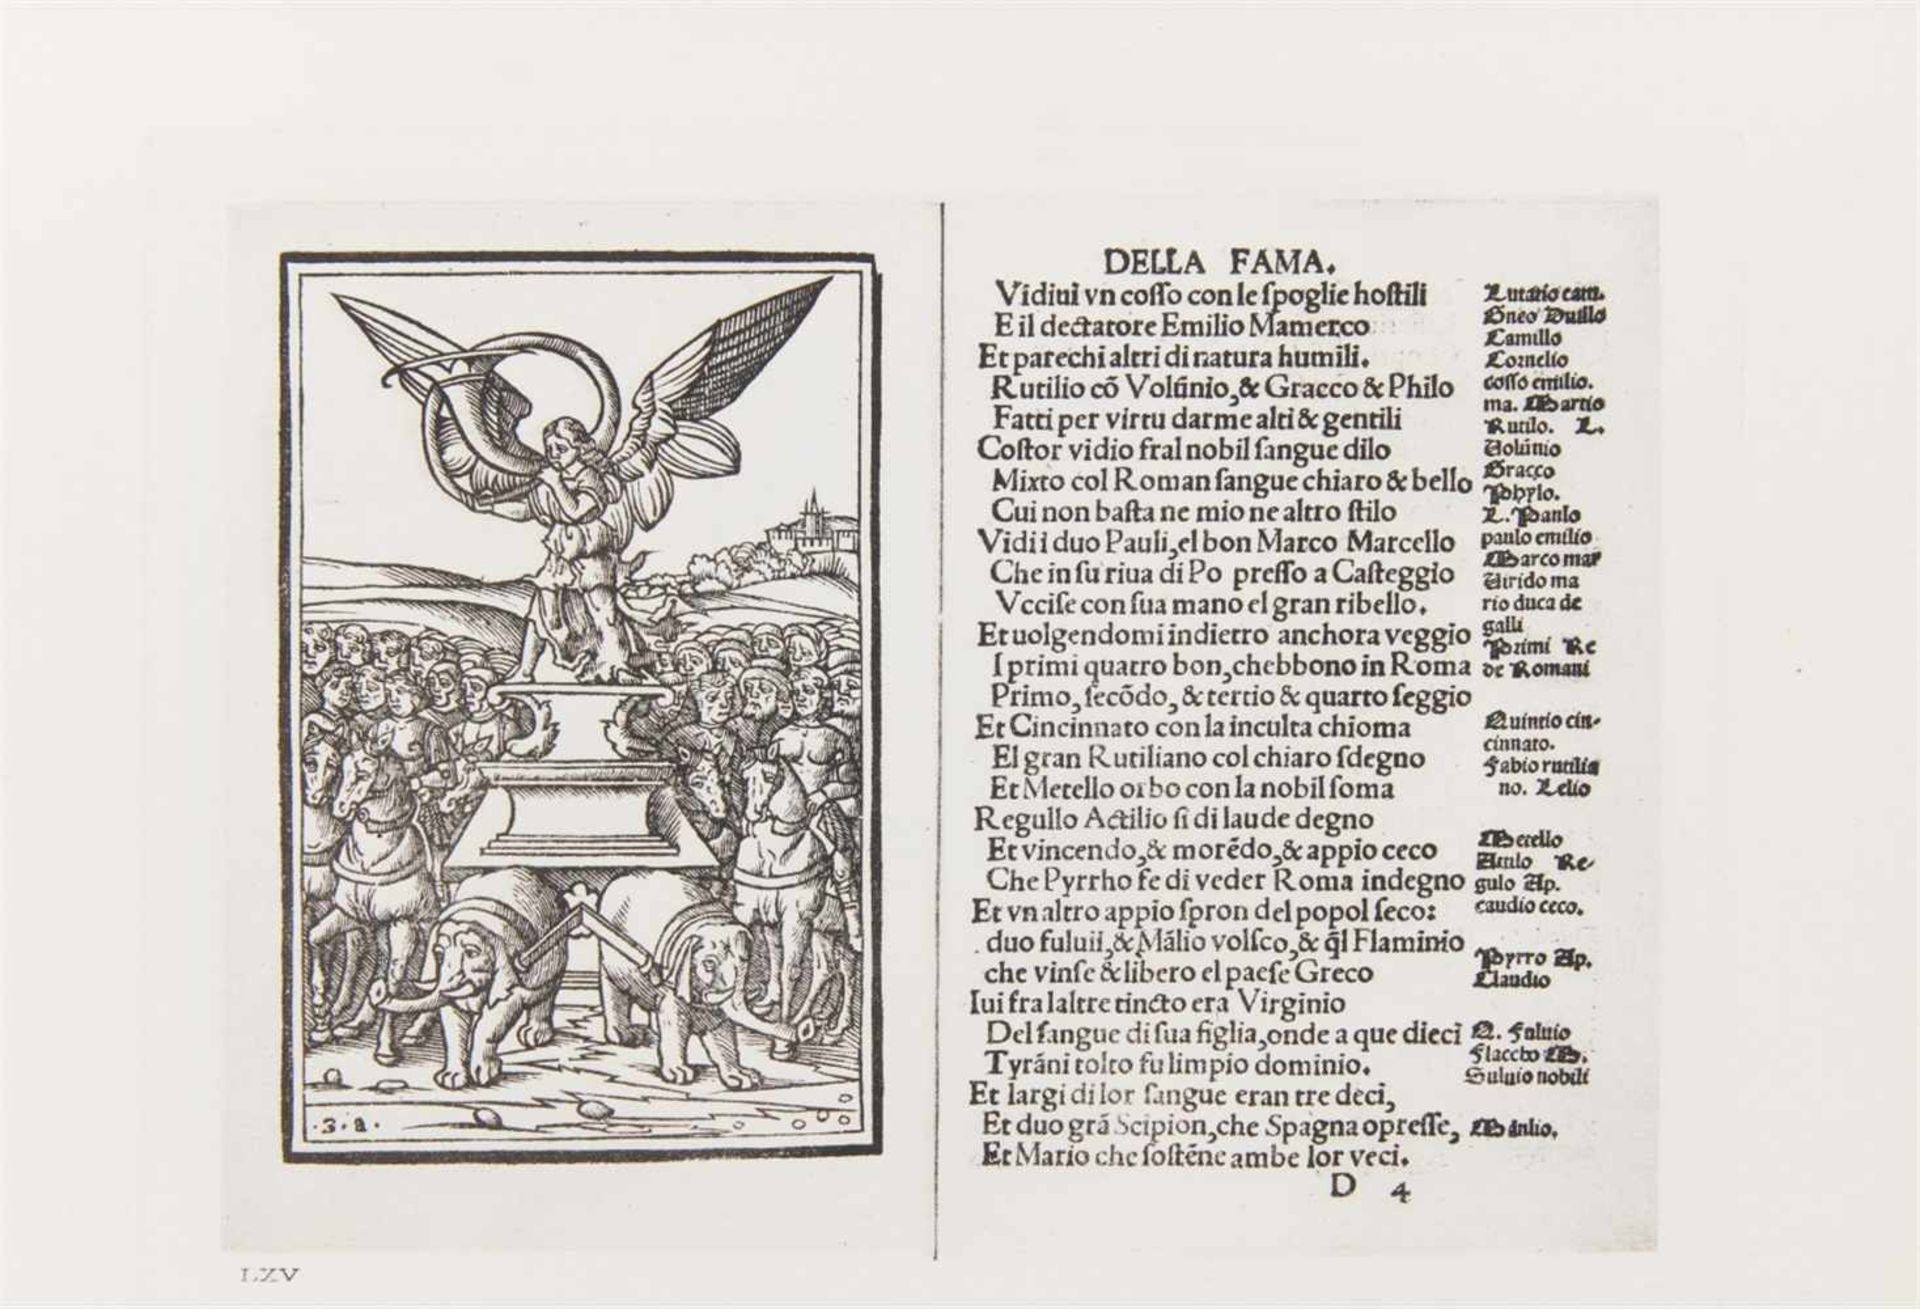 Marinis, Tammaro de: Il Castello di Monselice. Raccolta degli antichi libri Veneziani figurati.